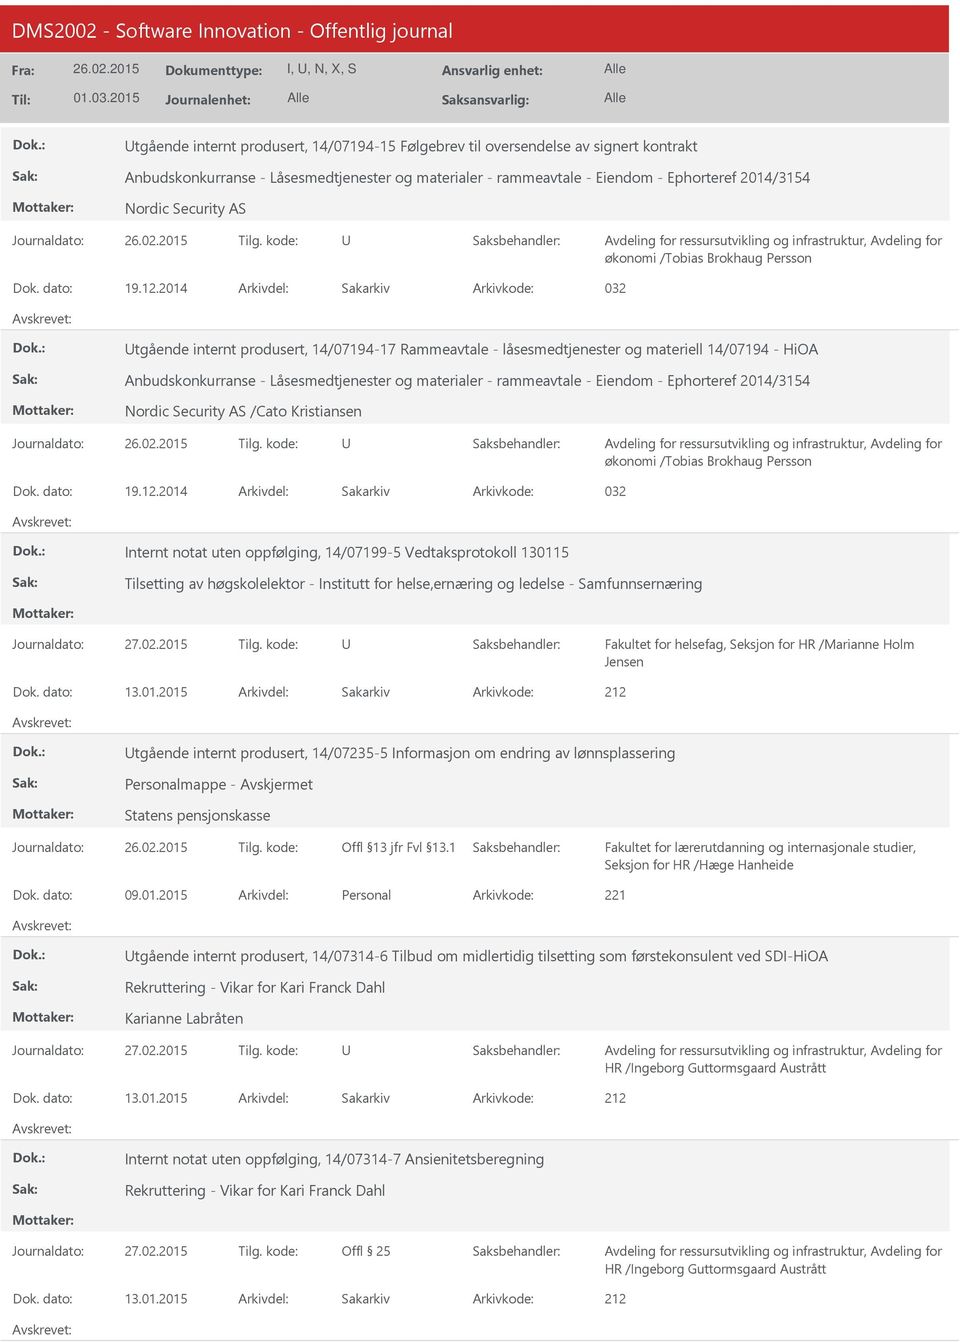 2014 Arkivdel: Sakarkiv Arkivkode: 032 tgående internt produsert, 14/07194-17 Rammeavtale - låsesmedtjenester og materiell 14/07194 - HiOA Anbudskonkurranse - Låsesmedtjenester og materialer -